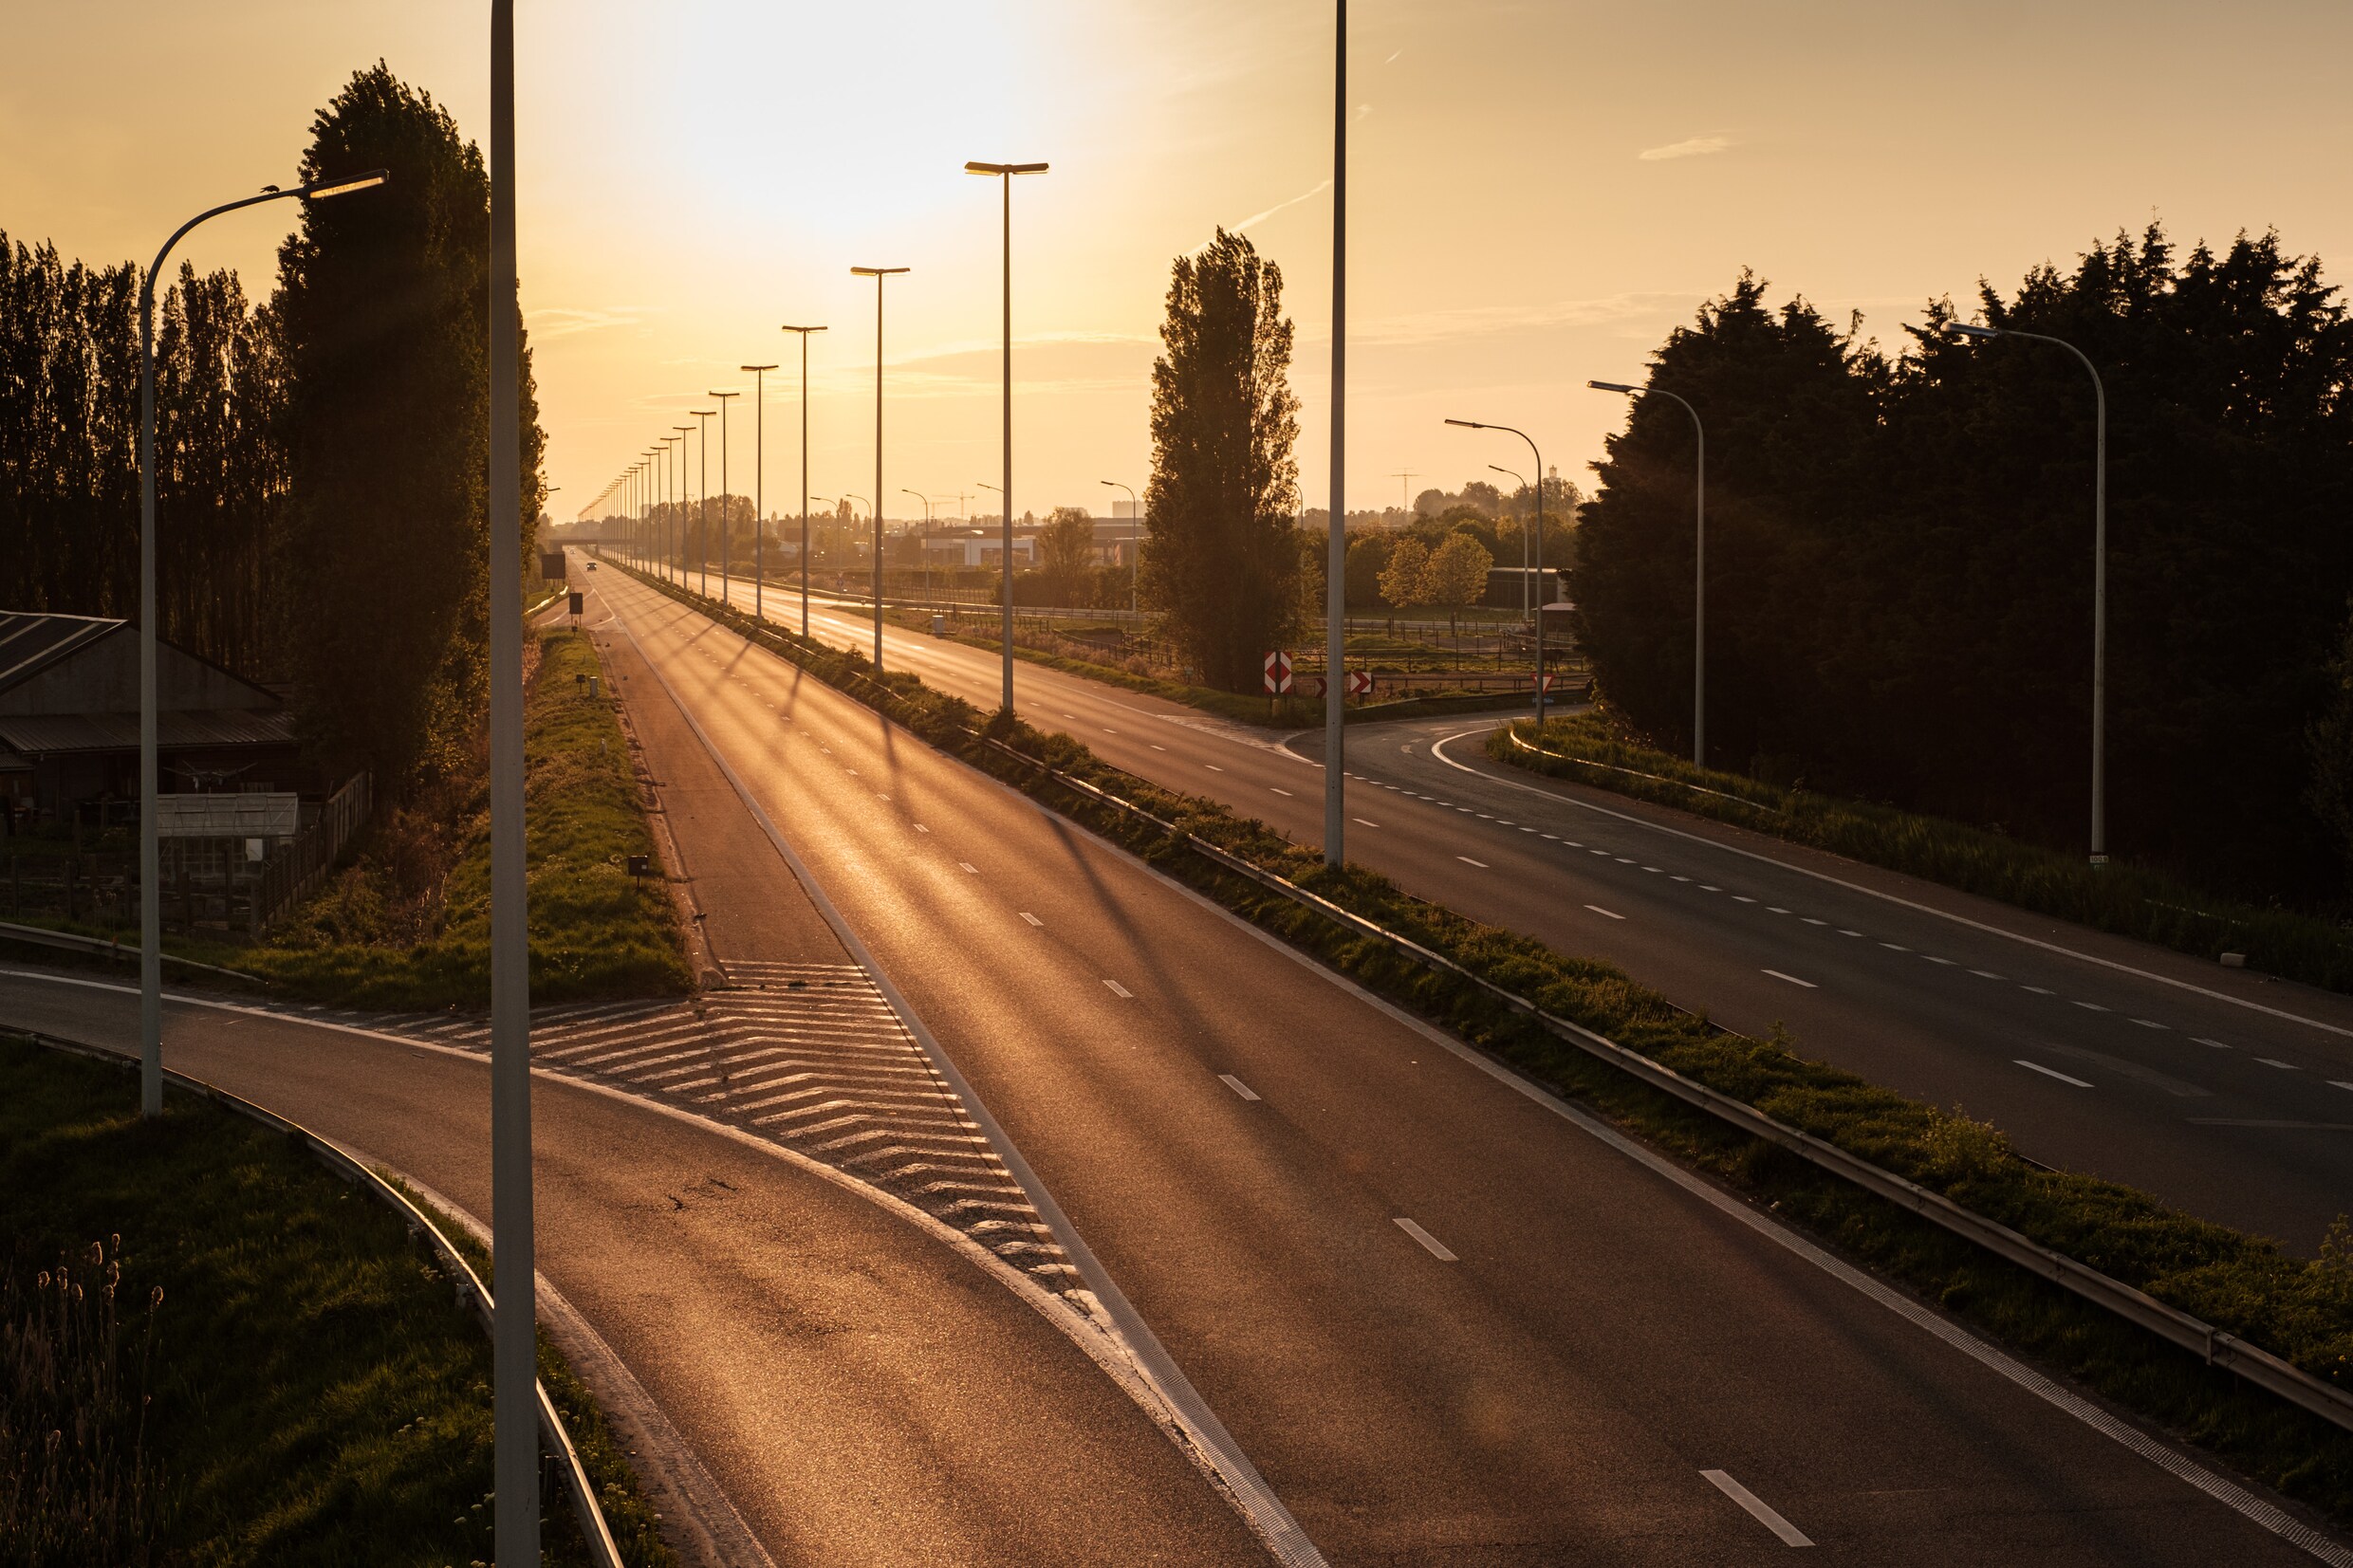 Expertengroep koopkracht blijft erbij in finaal rapport: ‘Verlaag snelheid naar 100 kilometer per uur op snelweg’